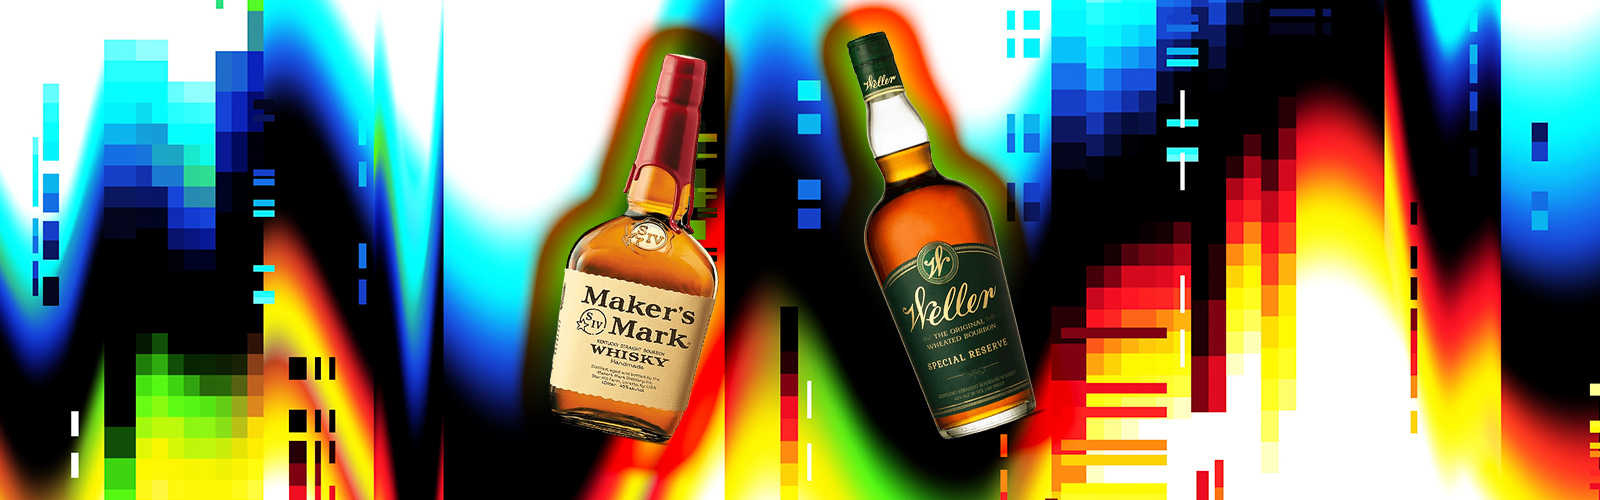 Weller vs. Maker's Mark